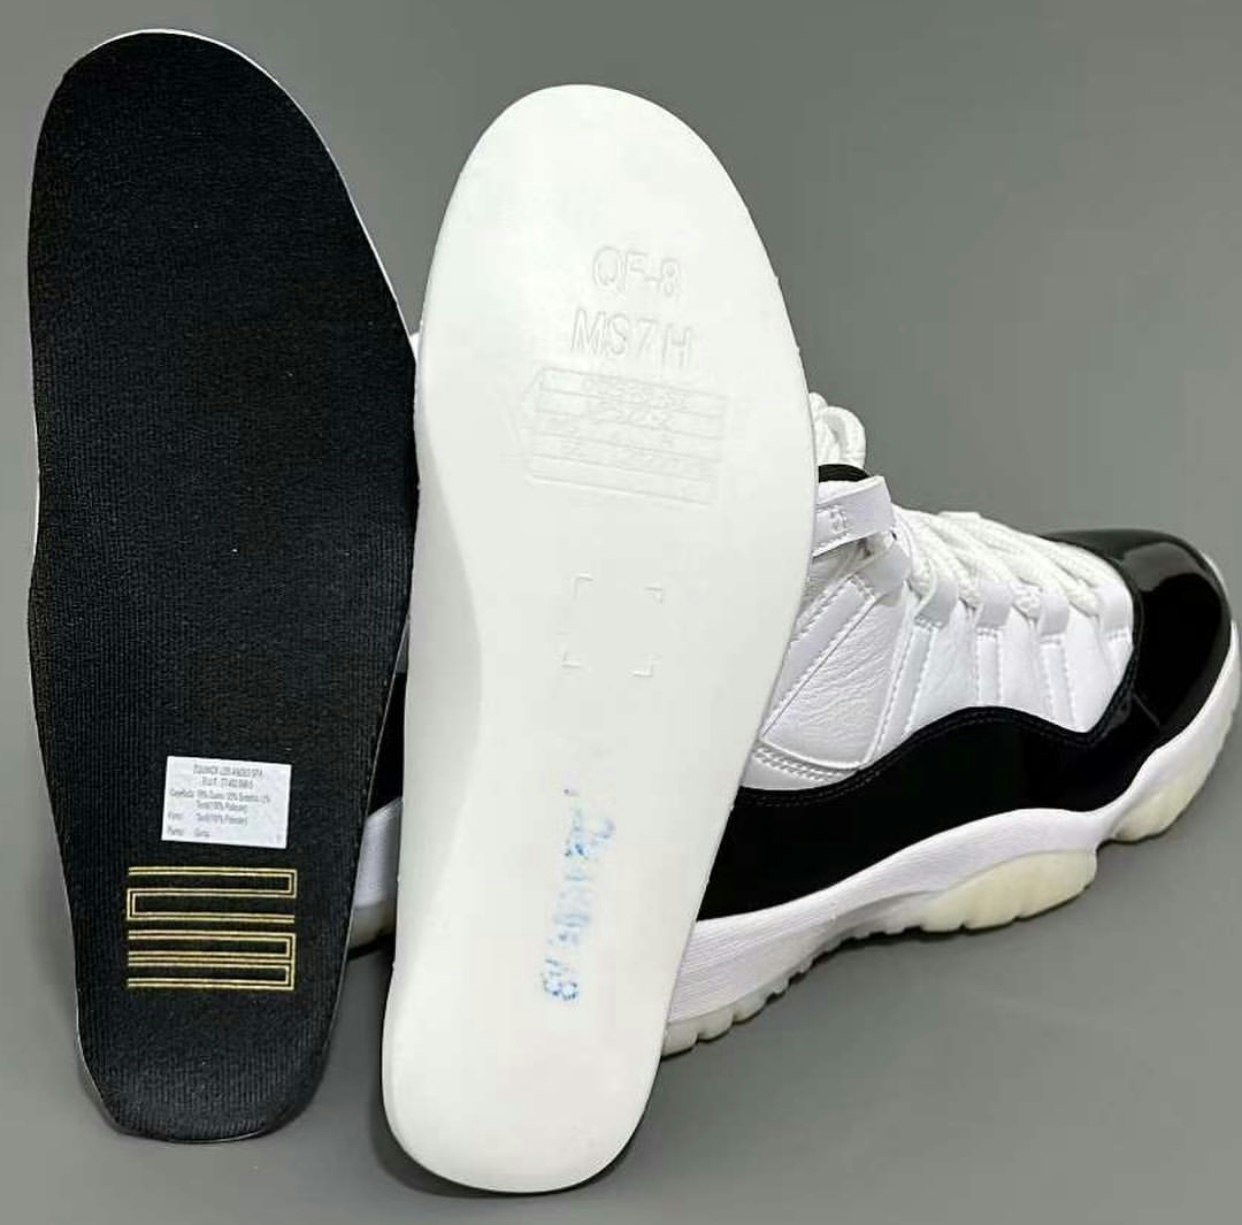 Nike Air Jordan 11 "DMP" (Defining Moment)